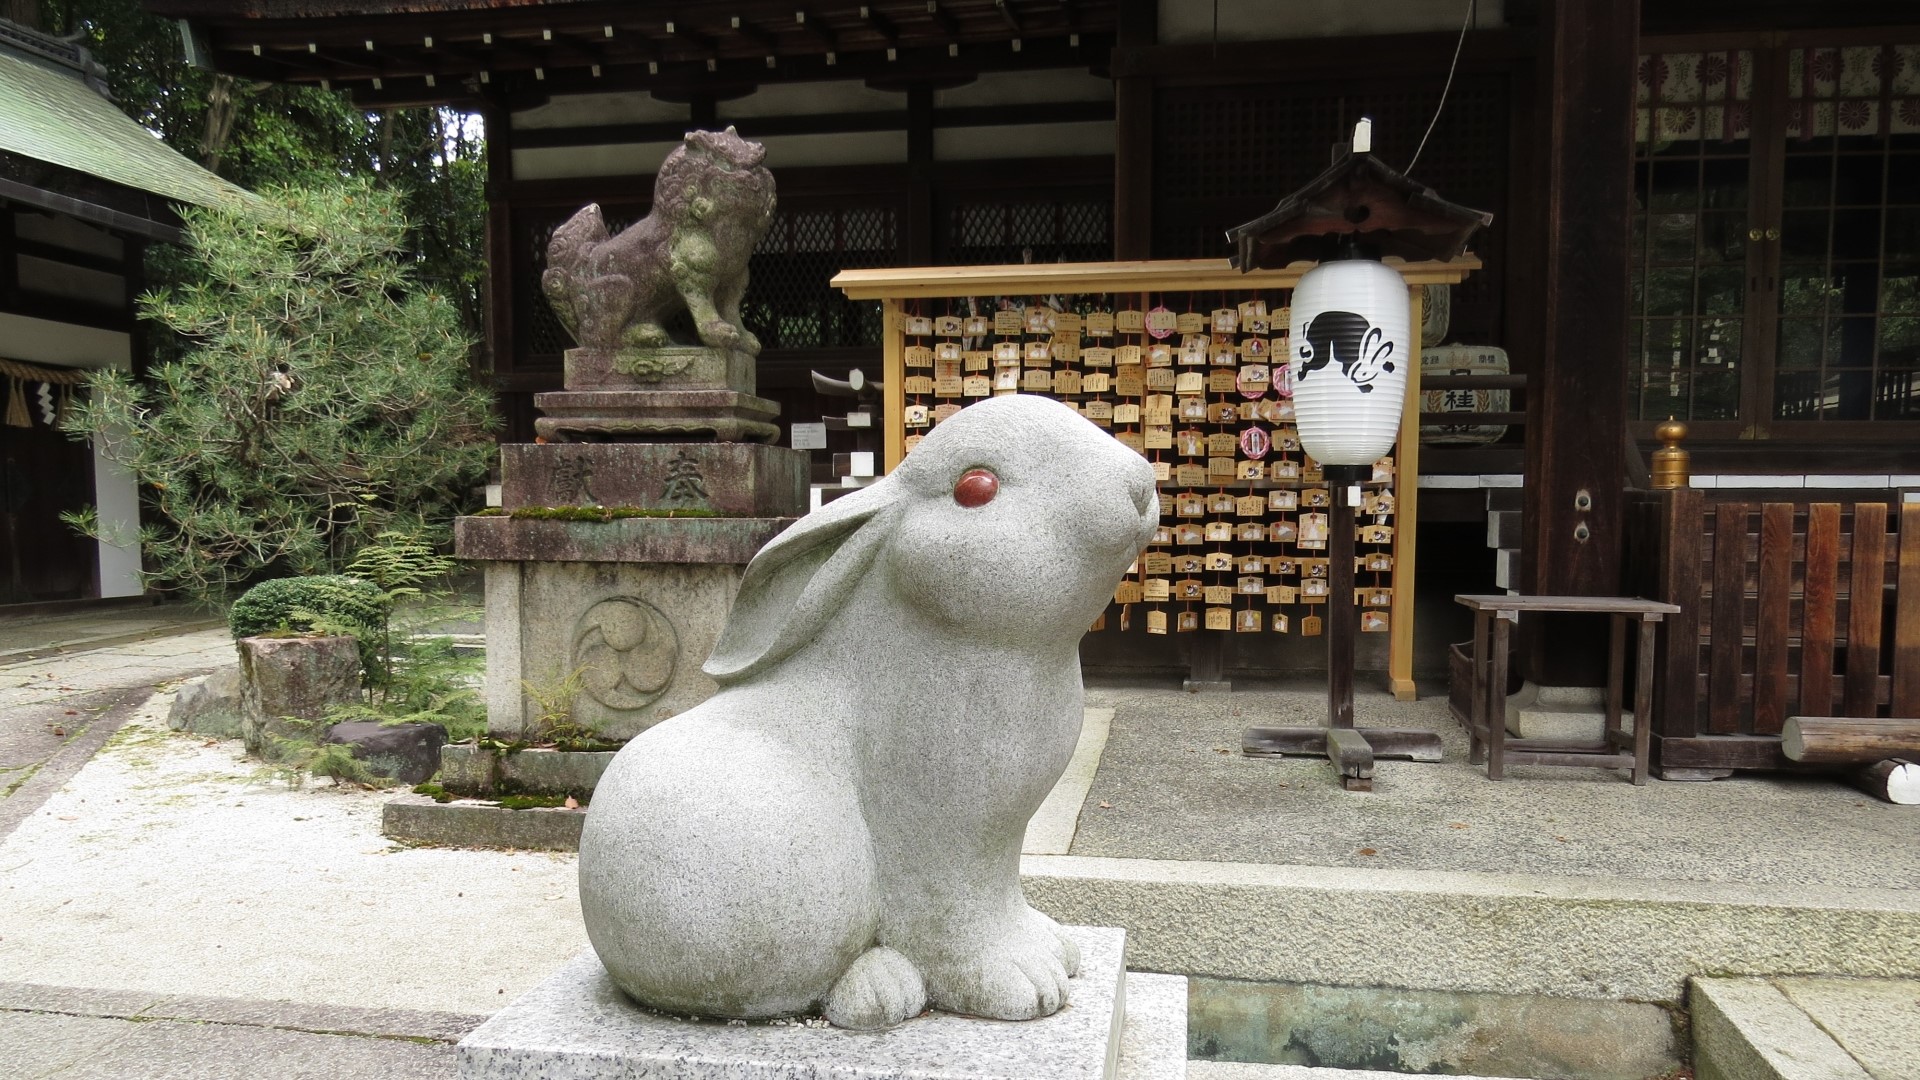 ■岡崎神社■うさぎづくしの可愛らしい光景で人気の神社。縁結びや夫婦円満、子授けのご利益も。